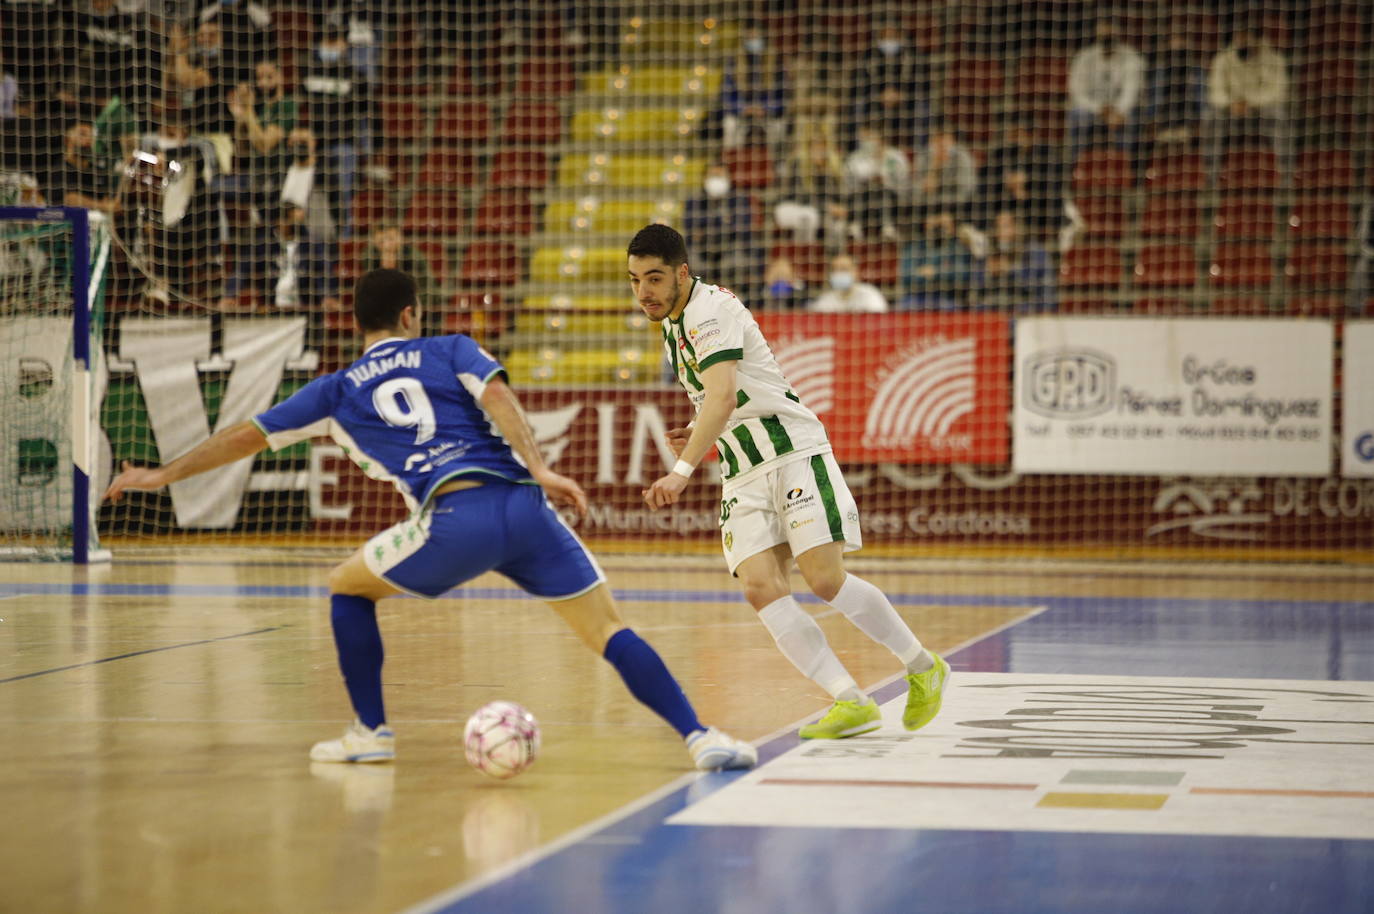 El Córdoba Patrimonio - Betis Futsal, en imágenes